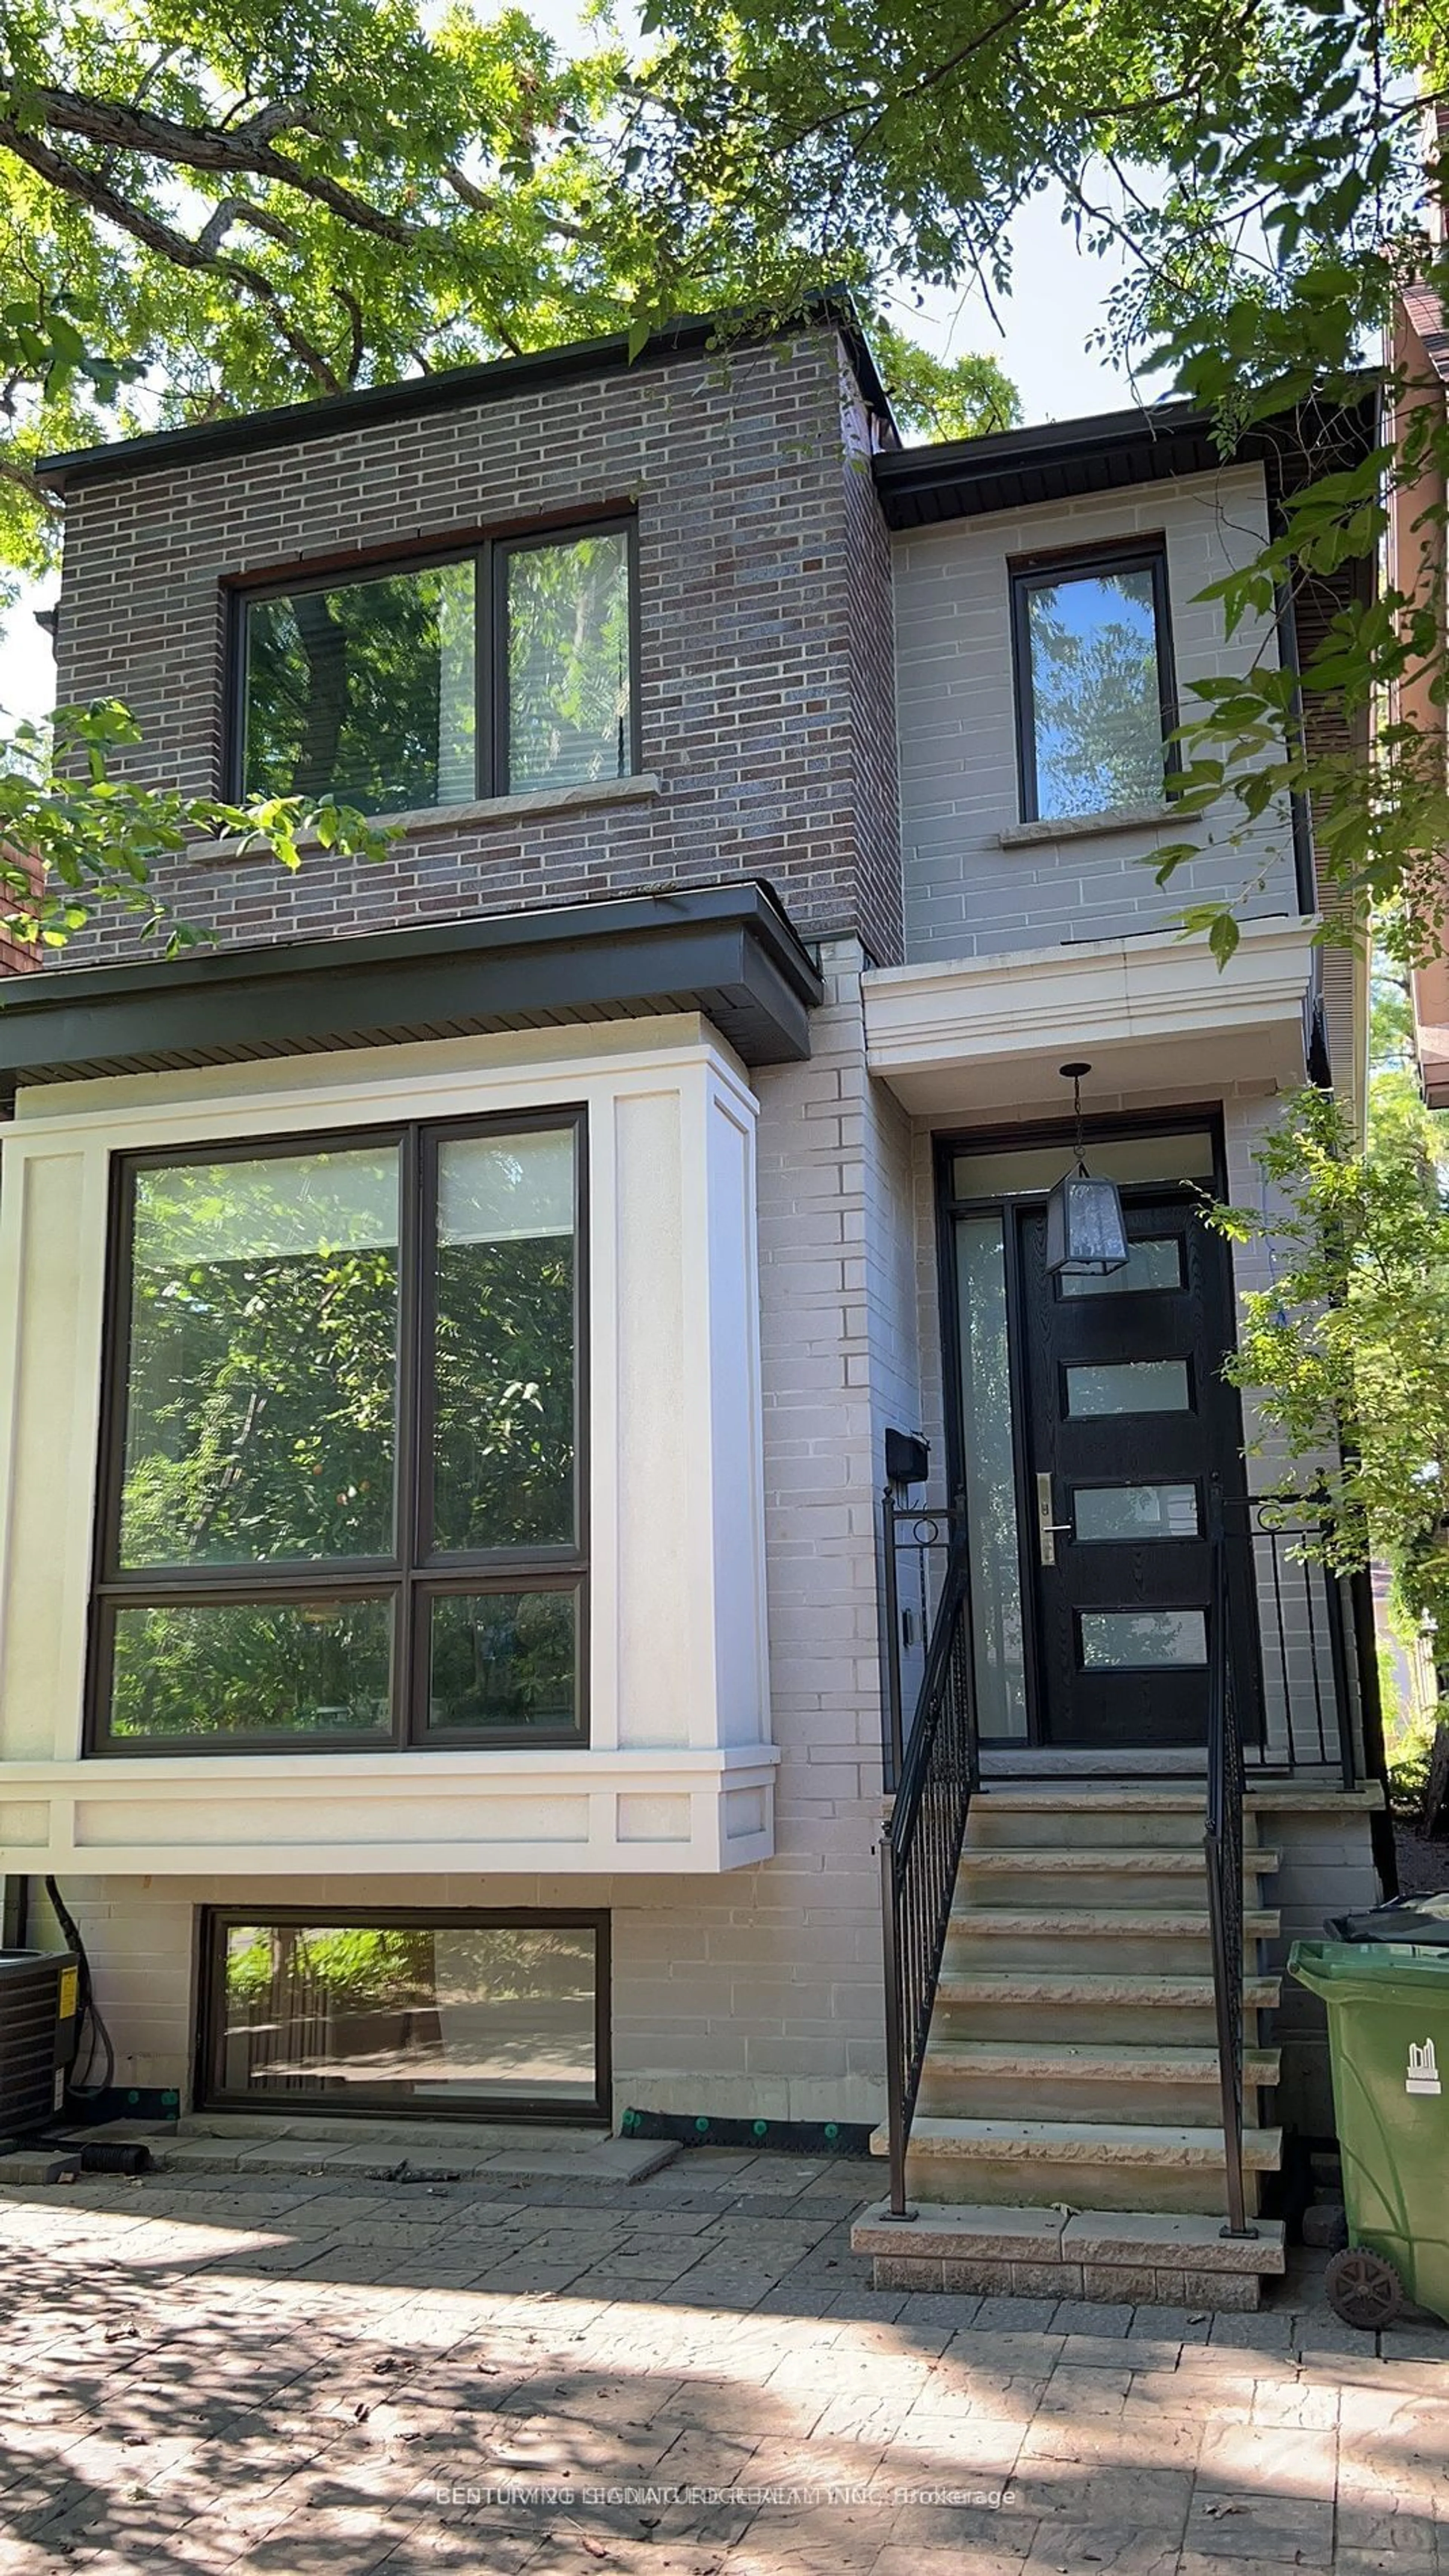 Home with brick exterior material for 368 Balliol St, Toronto Ontario M4S 1E2